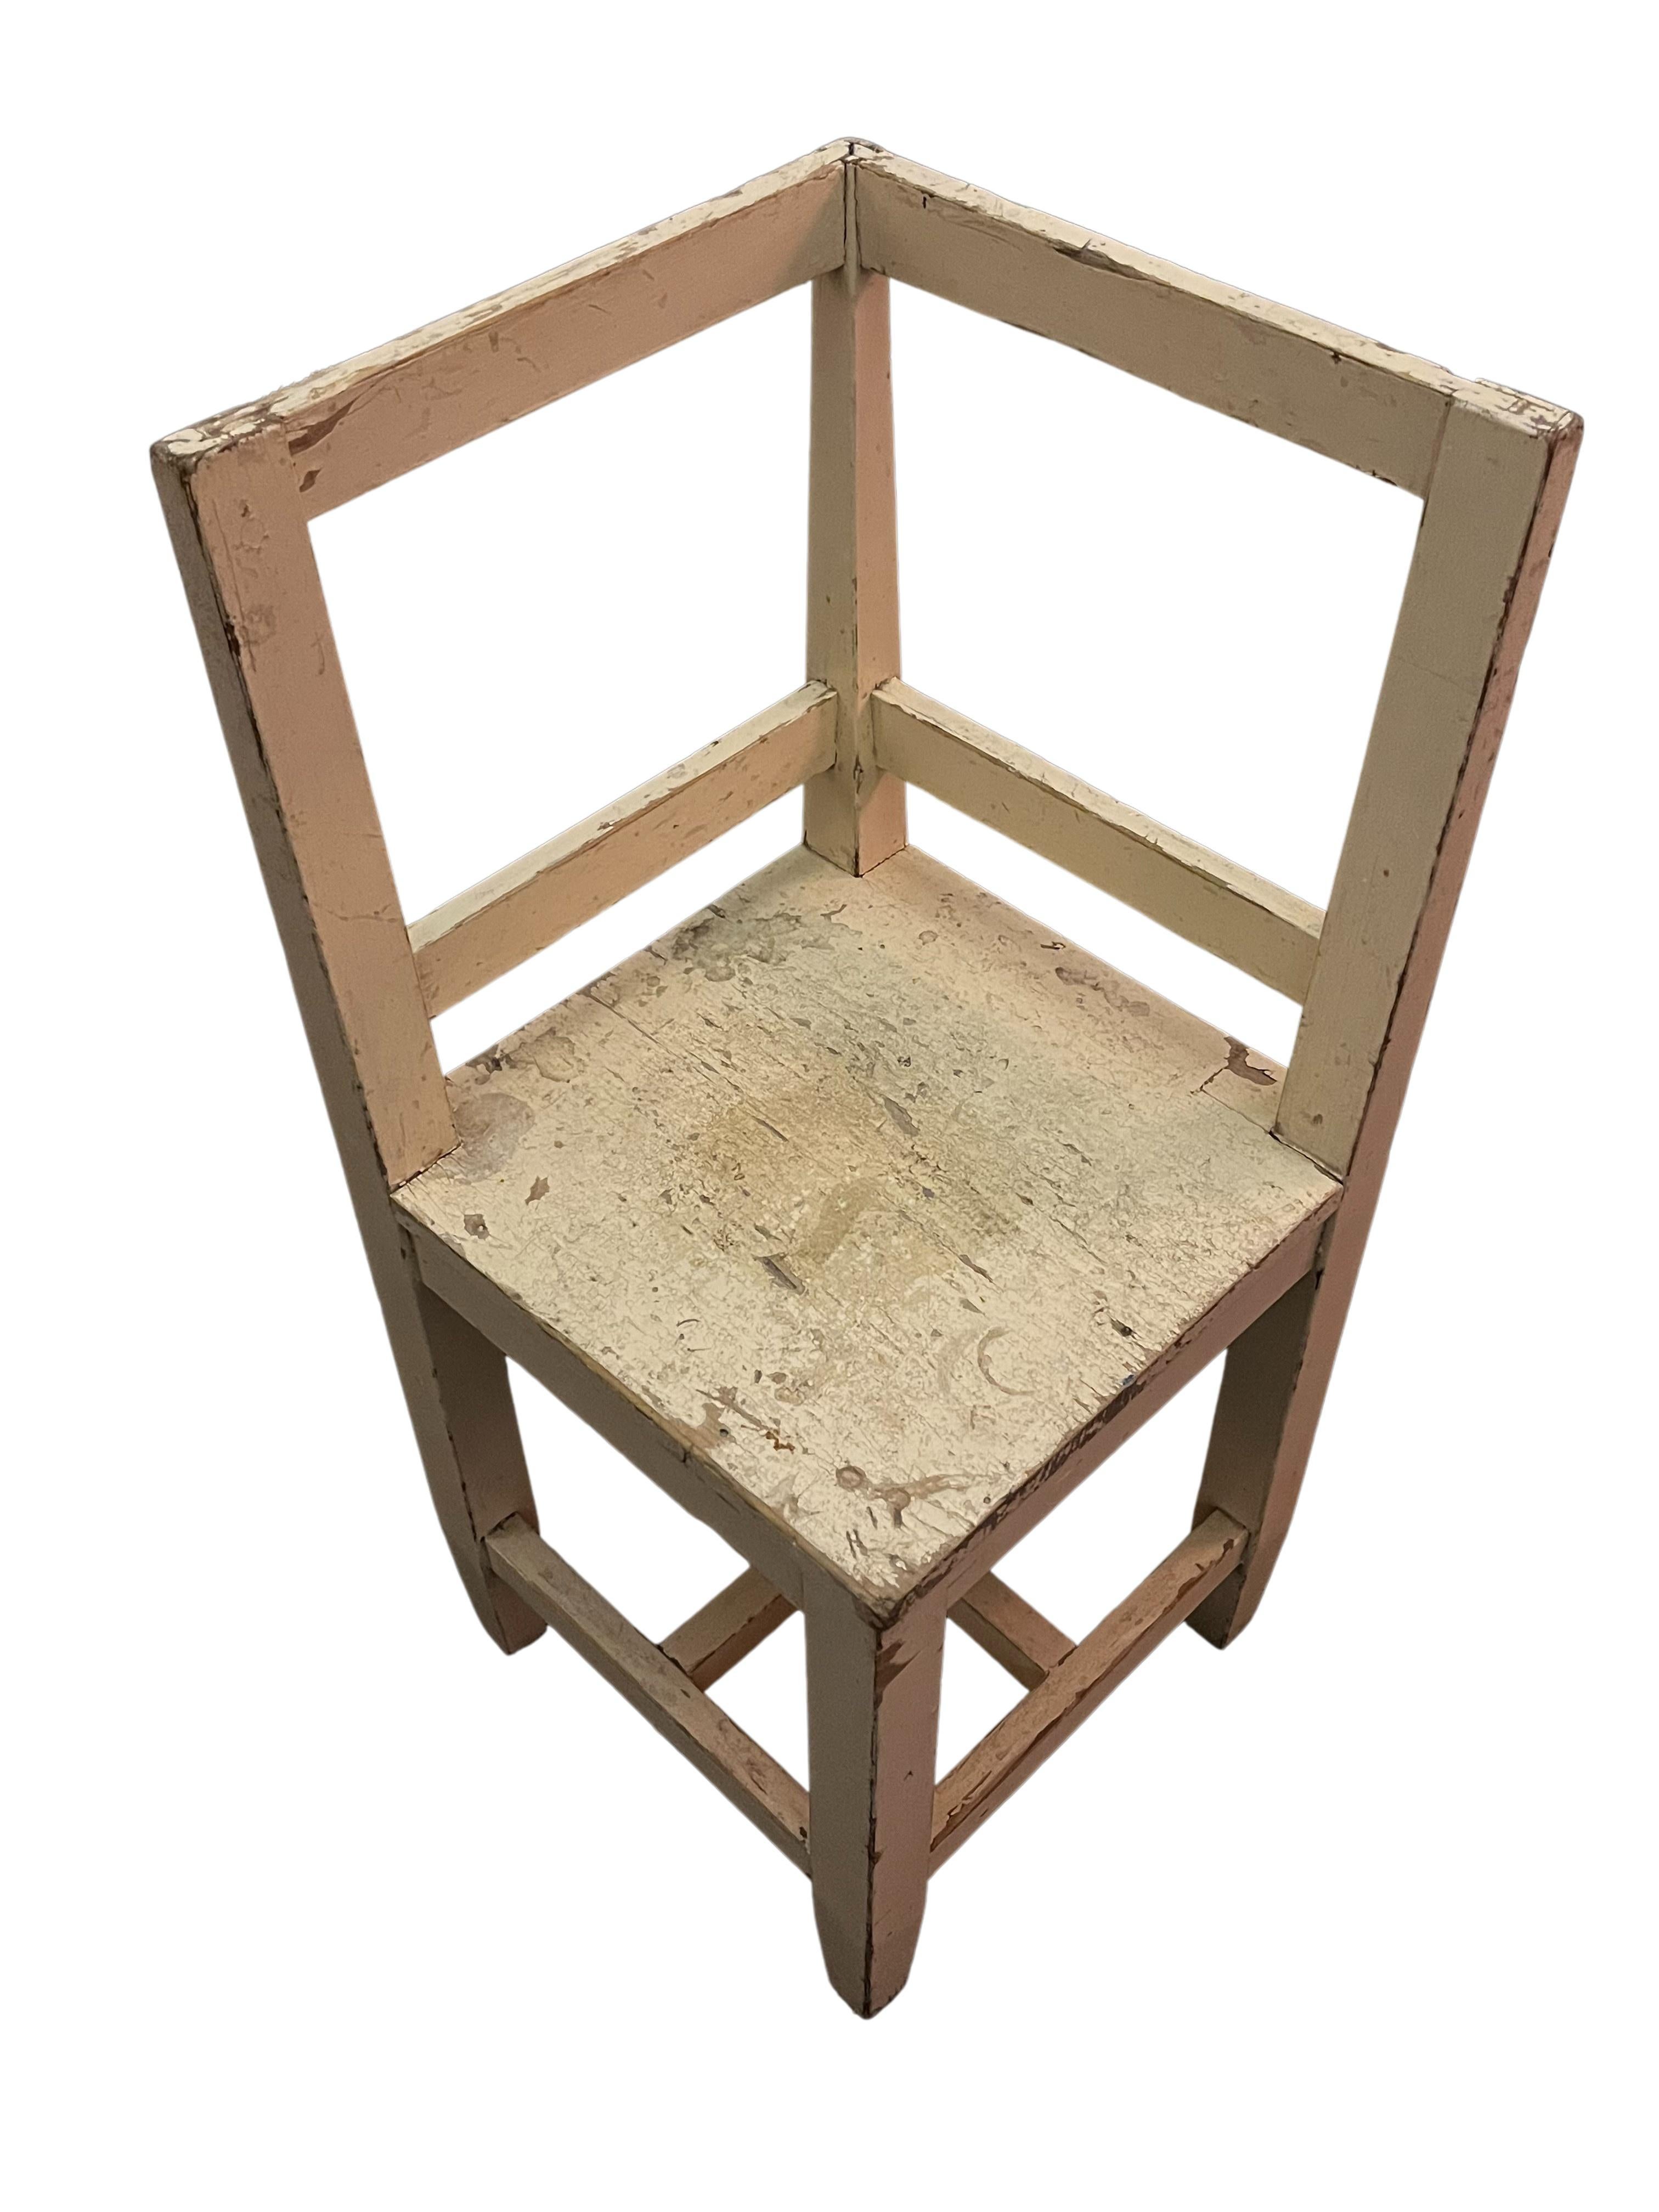 Superbe chaise / tabouret en état d'origine du célèbre Werkbund, Allemagne, fabriqué à la fin des années 1920. 

Le design ingénieux montre une chaise carrée avec un dossier autour du coin et un détail particulièrement agréable est la bande carrée